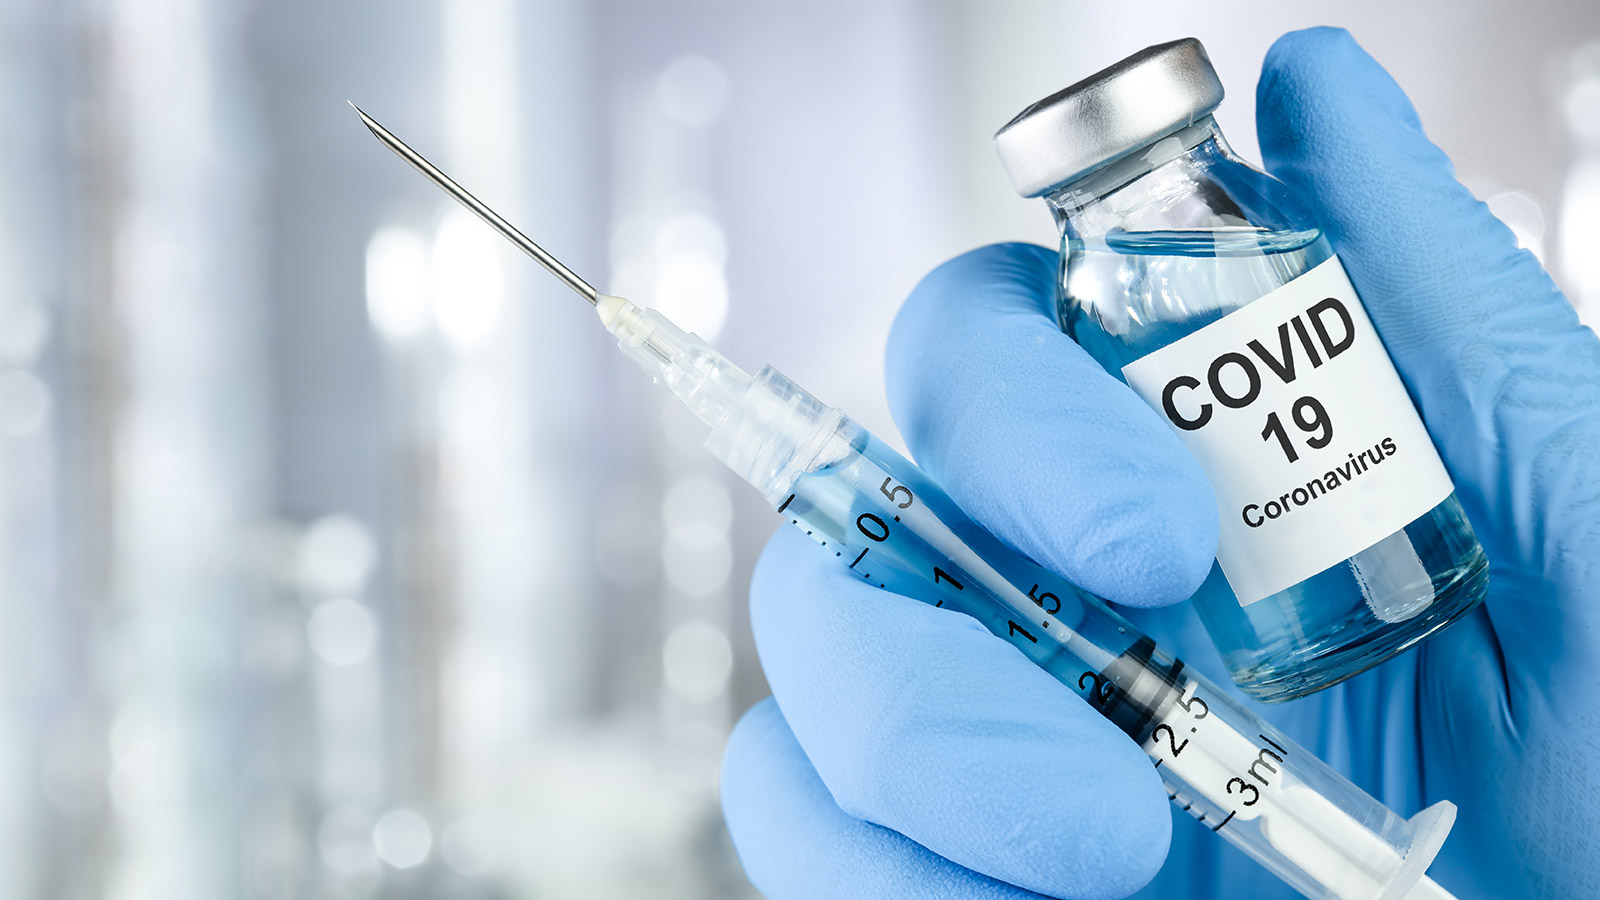 Se dará crédito de $25 a quienes se vacunen contra el COVID-19, asegura Walgreens